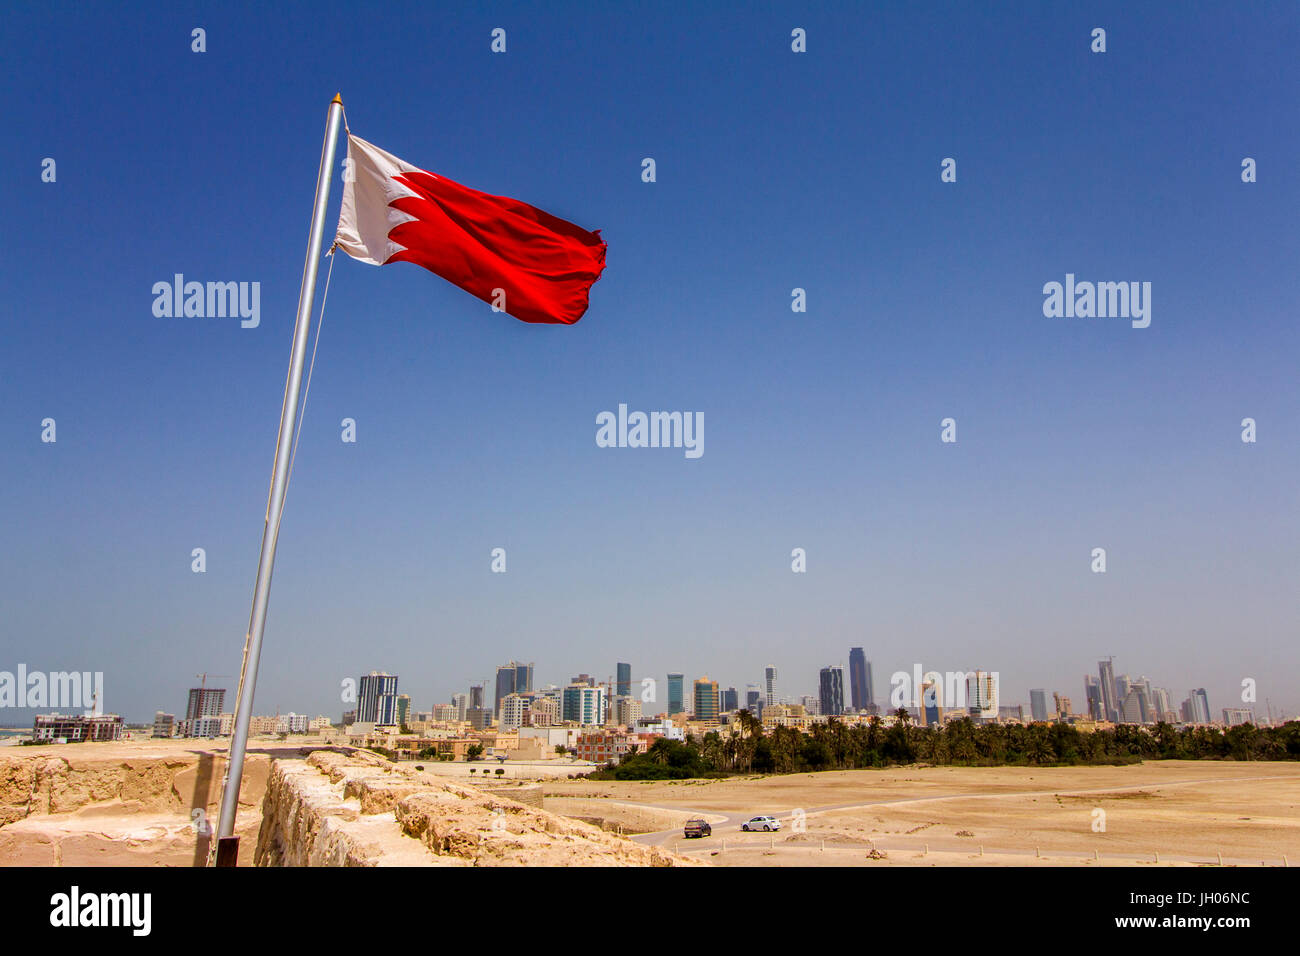 Bahrain bandiera è sventolata al Qal'at al Bahrain, Bahrain è uno dei nove paesi tagliare legami diplomatici con il Qatar nel recente Golfo Persico crisi Foto Stock